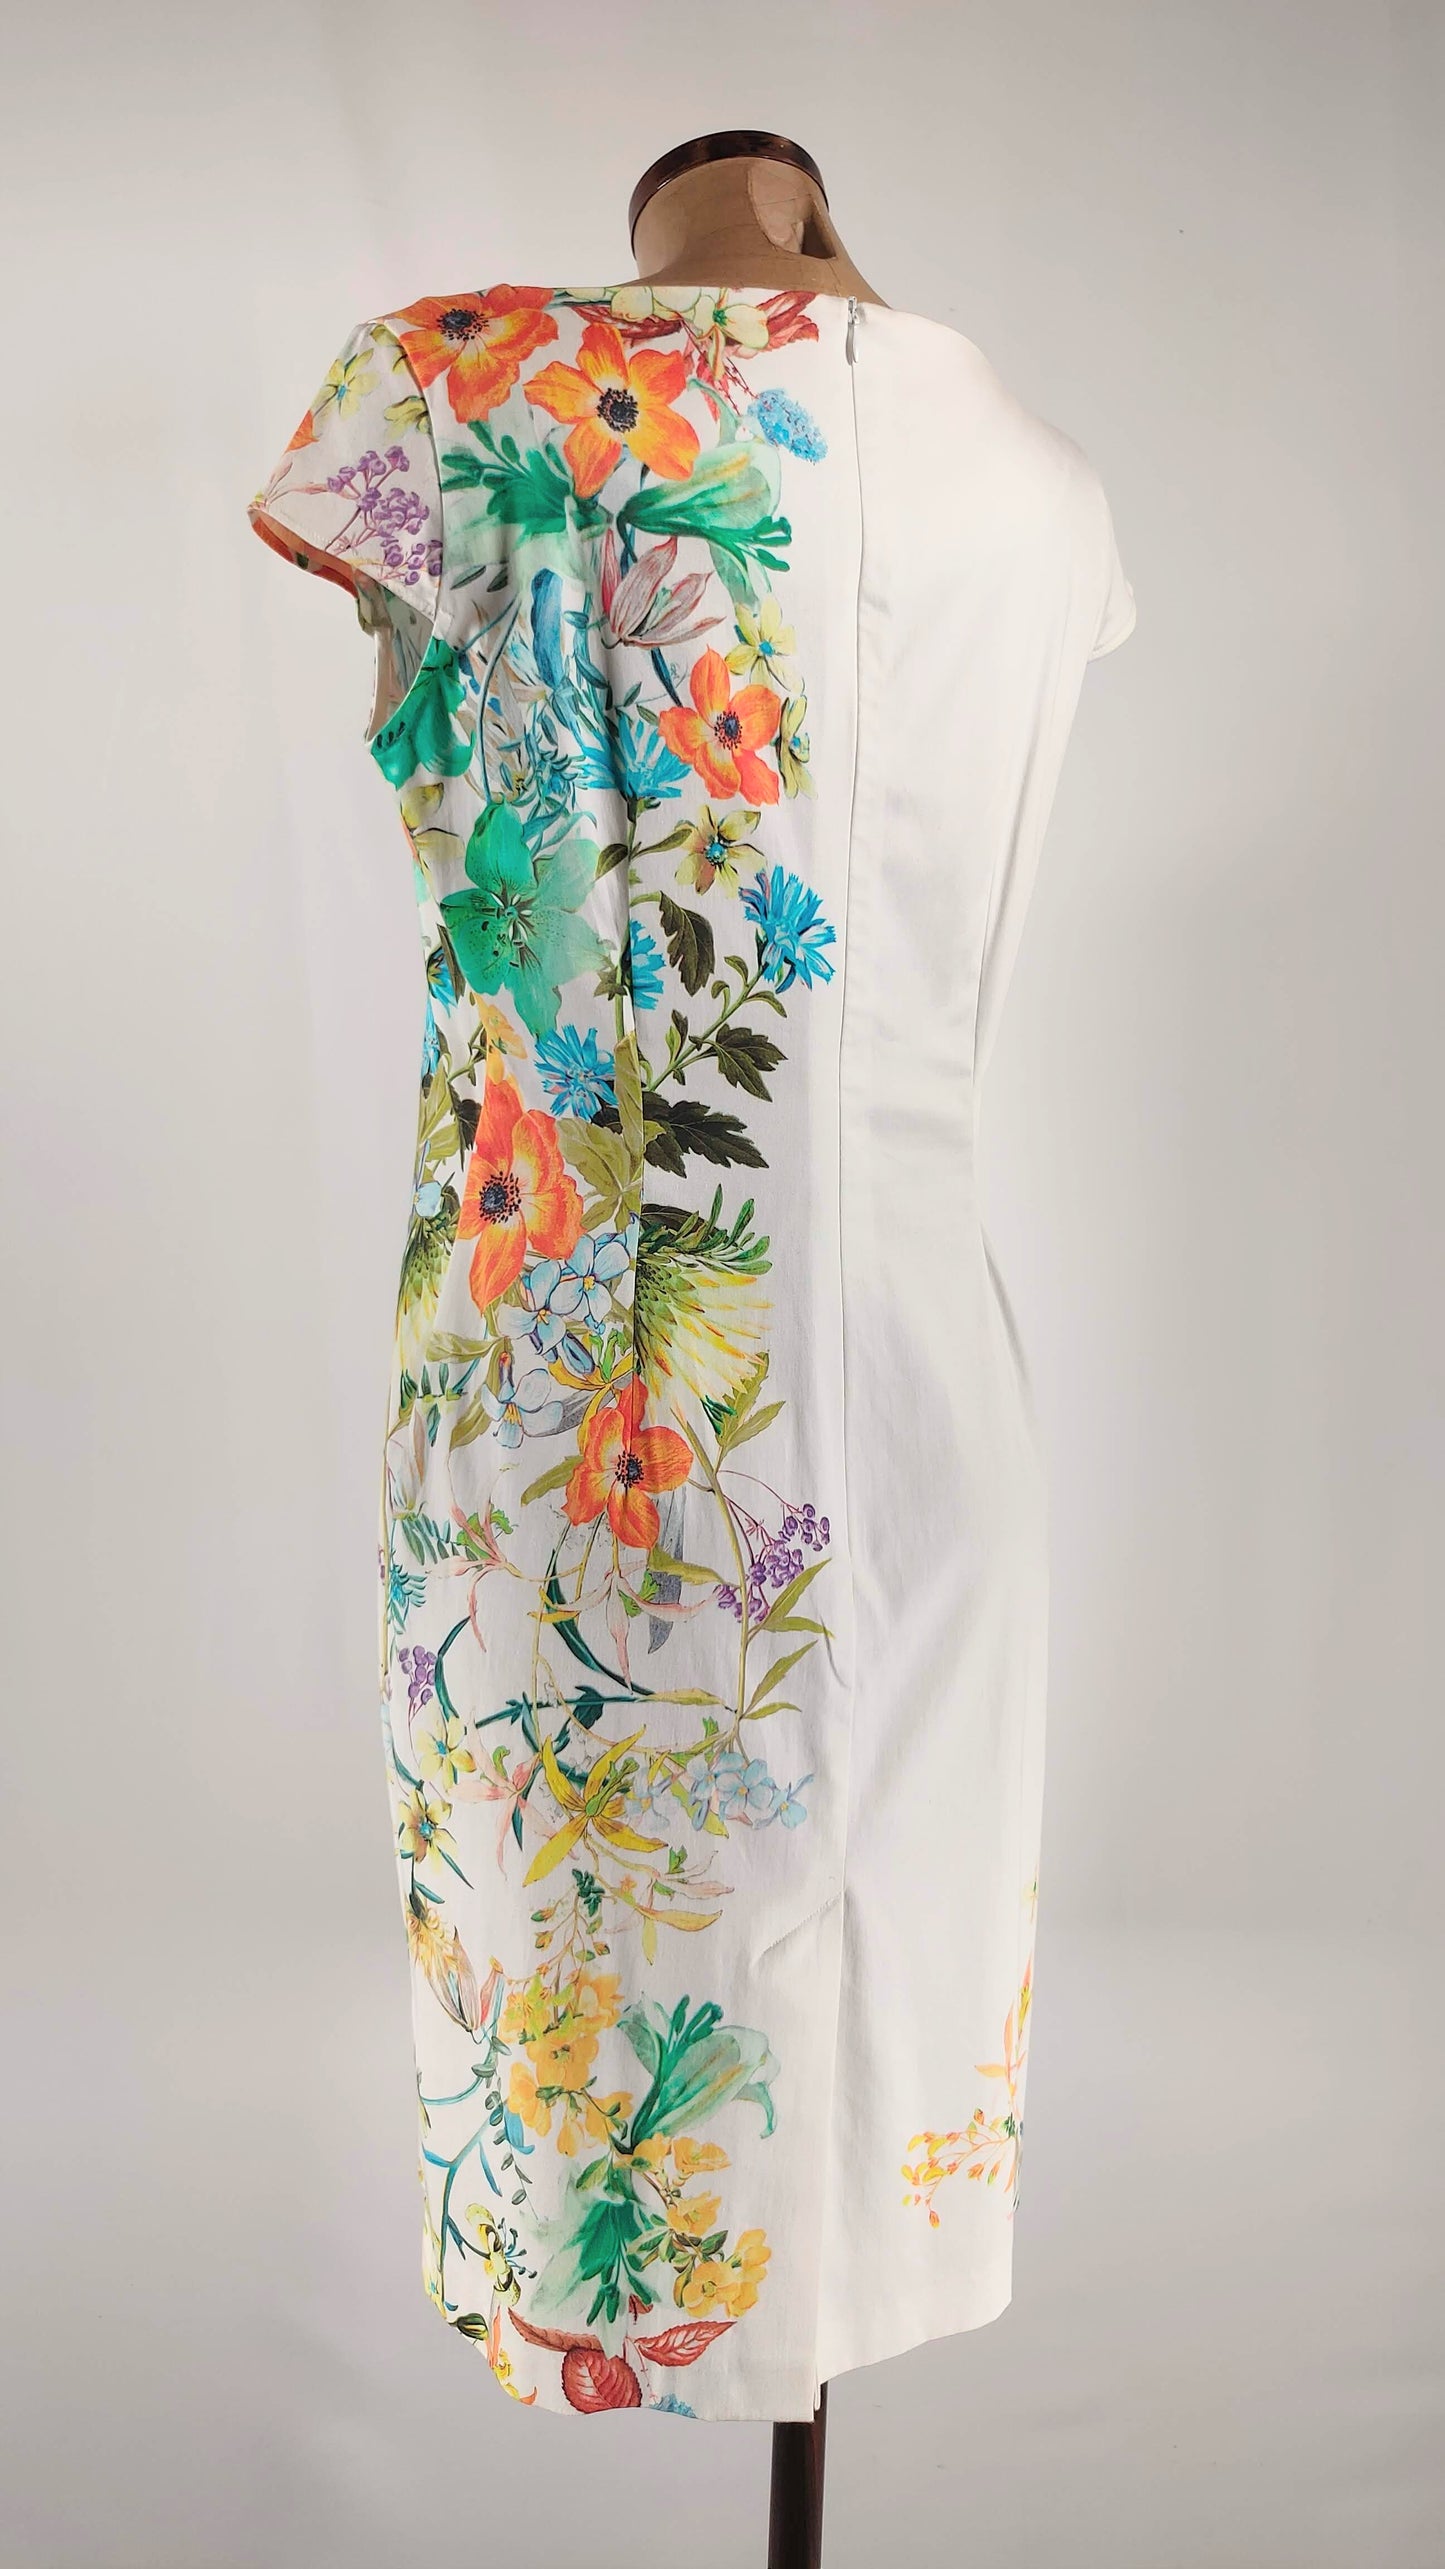 Vestido blanco con estampado multicolor floral